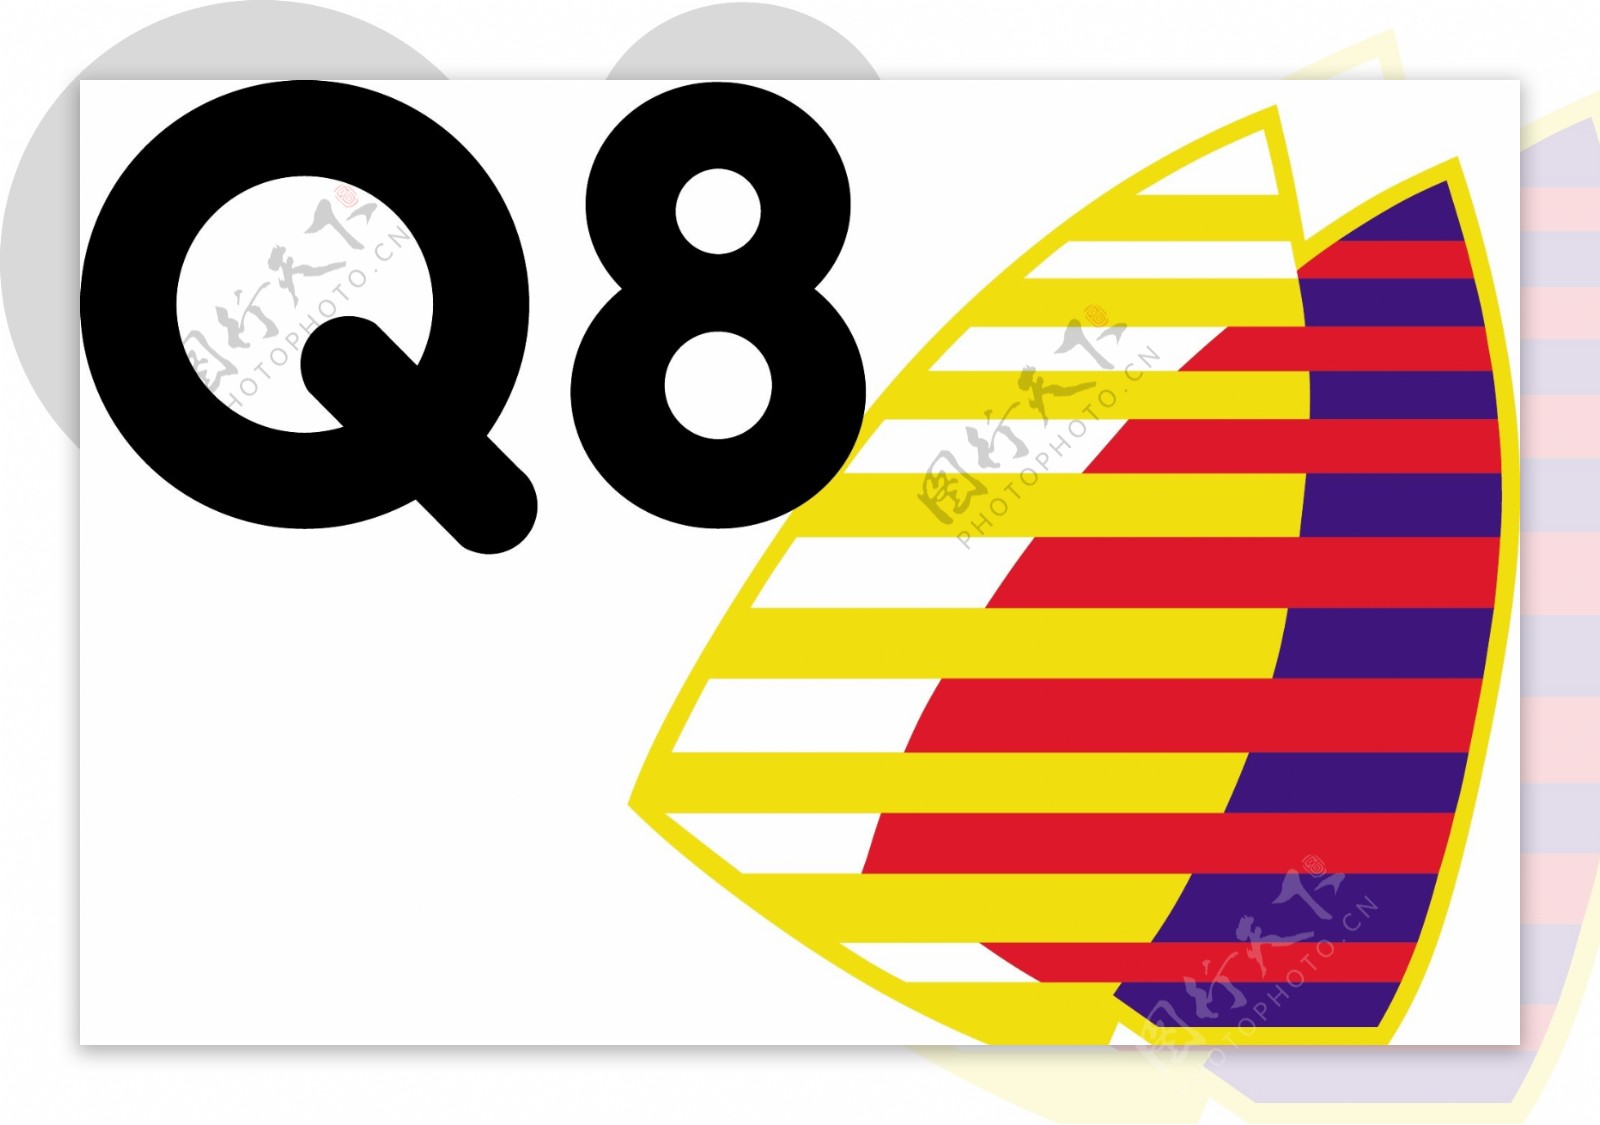 Q8标志